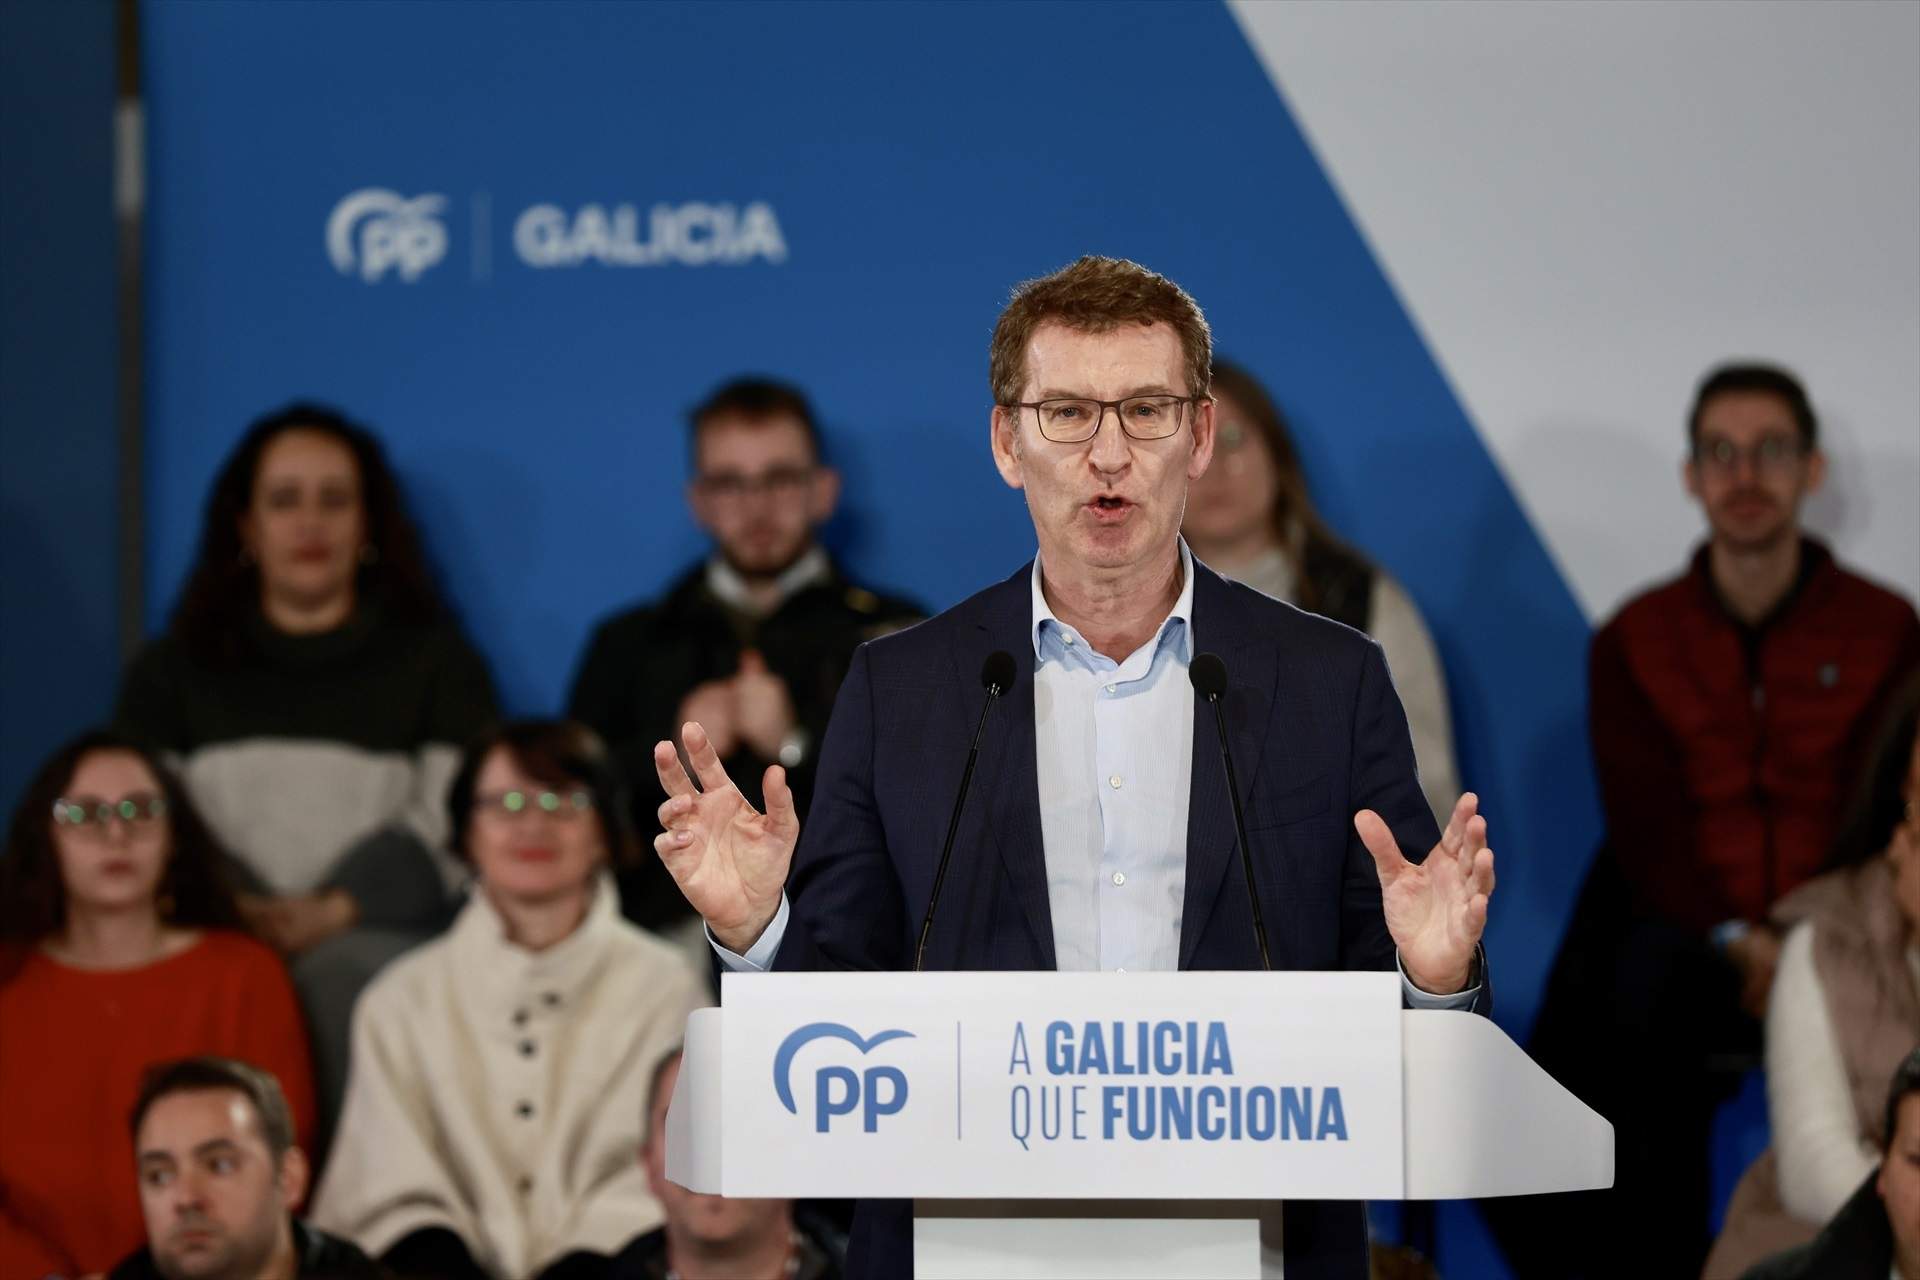 Feijóo recoge cable sobre el indulto condicionado a Puigdemont: "No acepto ni aceptaré los indultos"